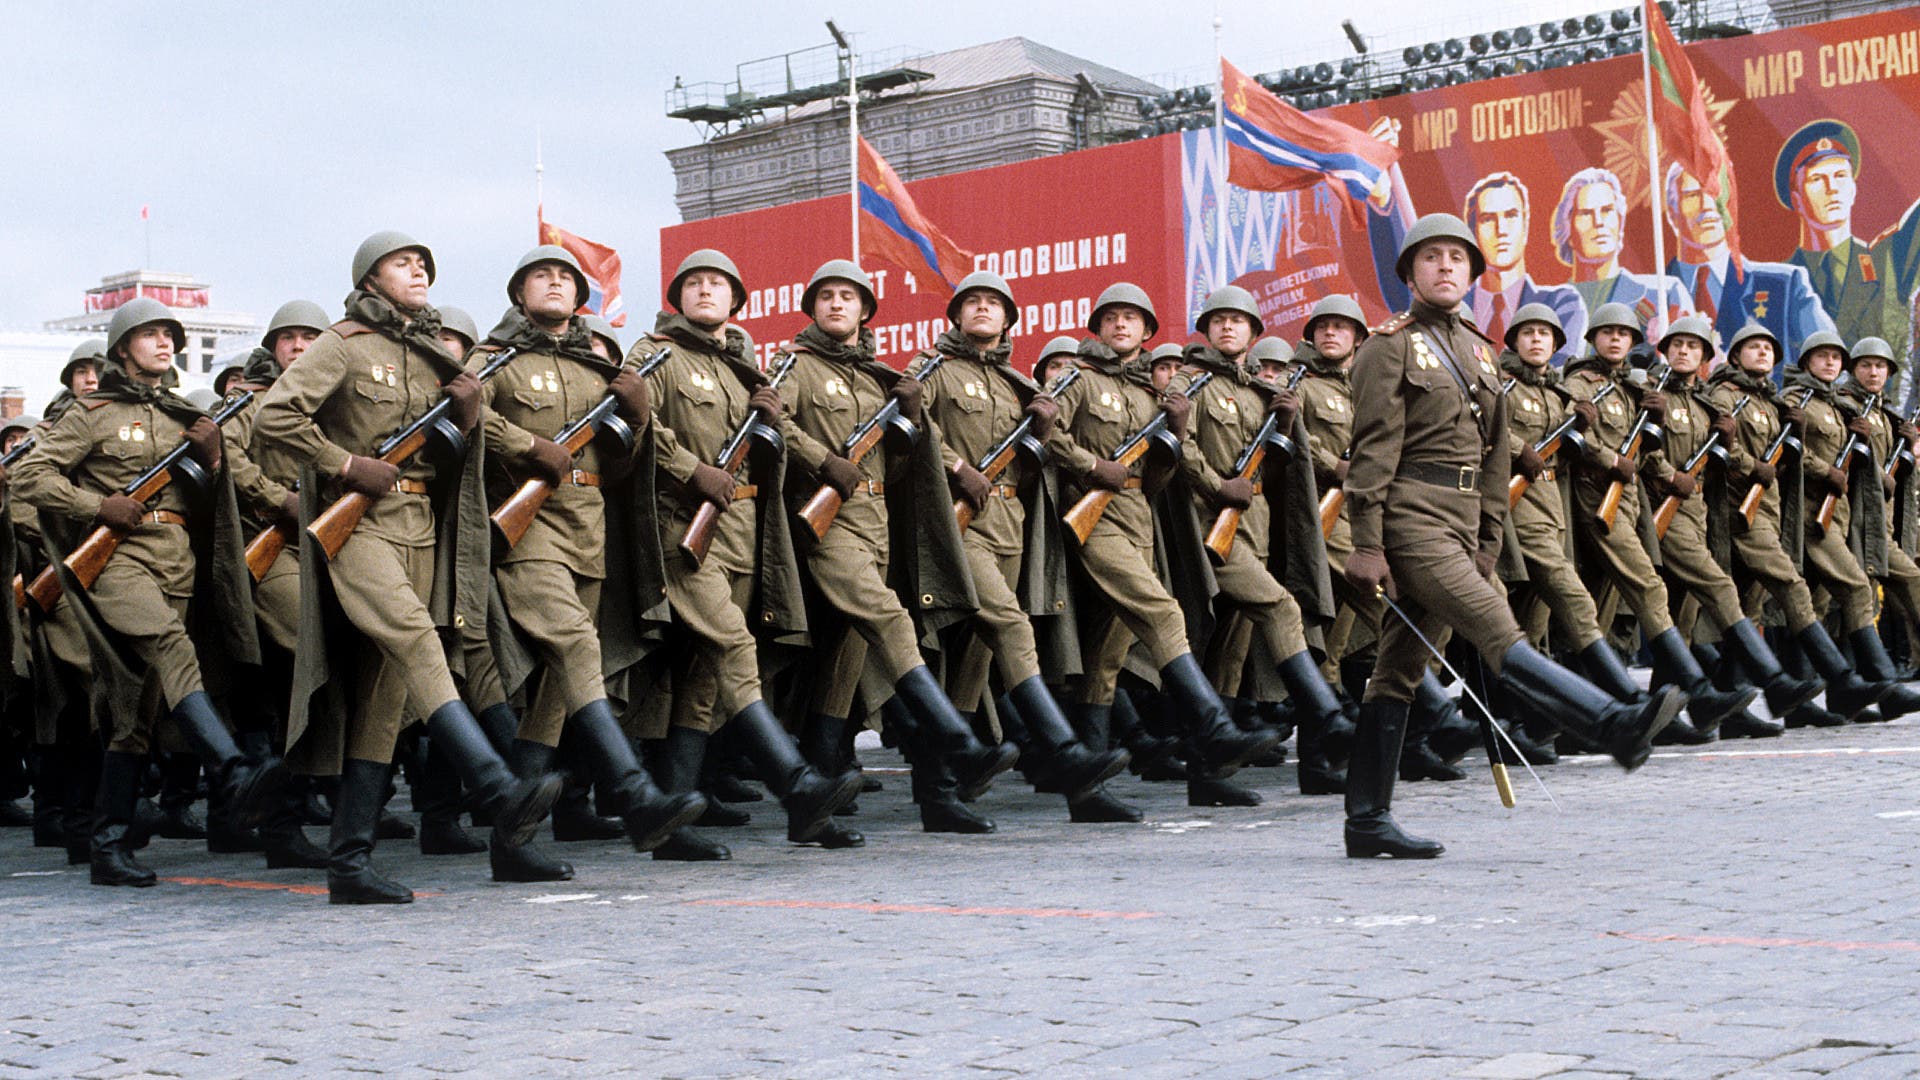 جانب من القوات السوفيتية خلال استعراض عسكري